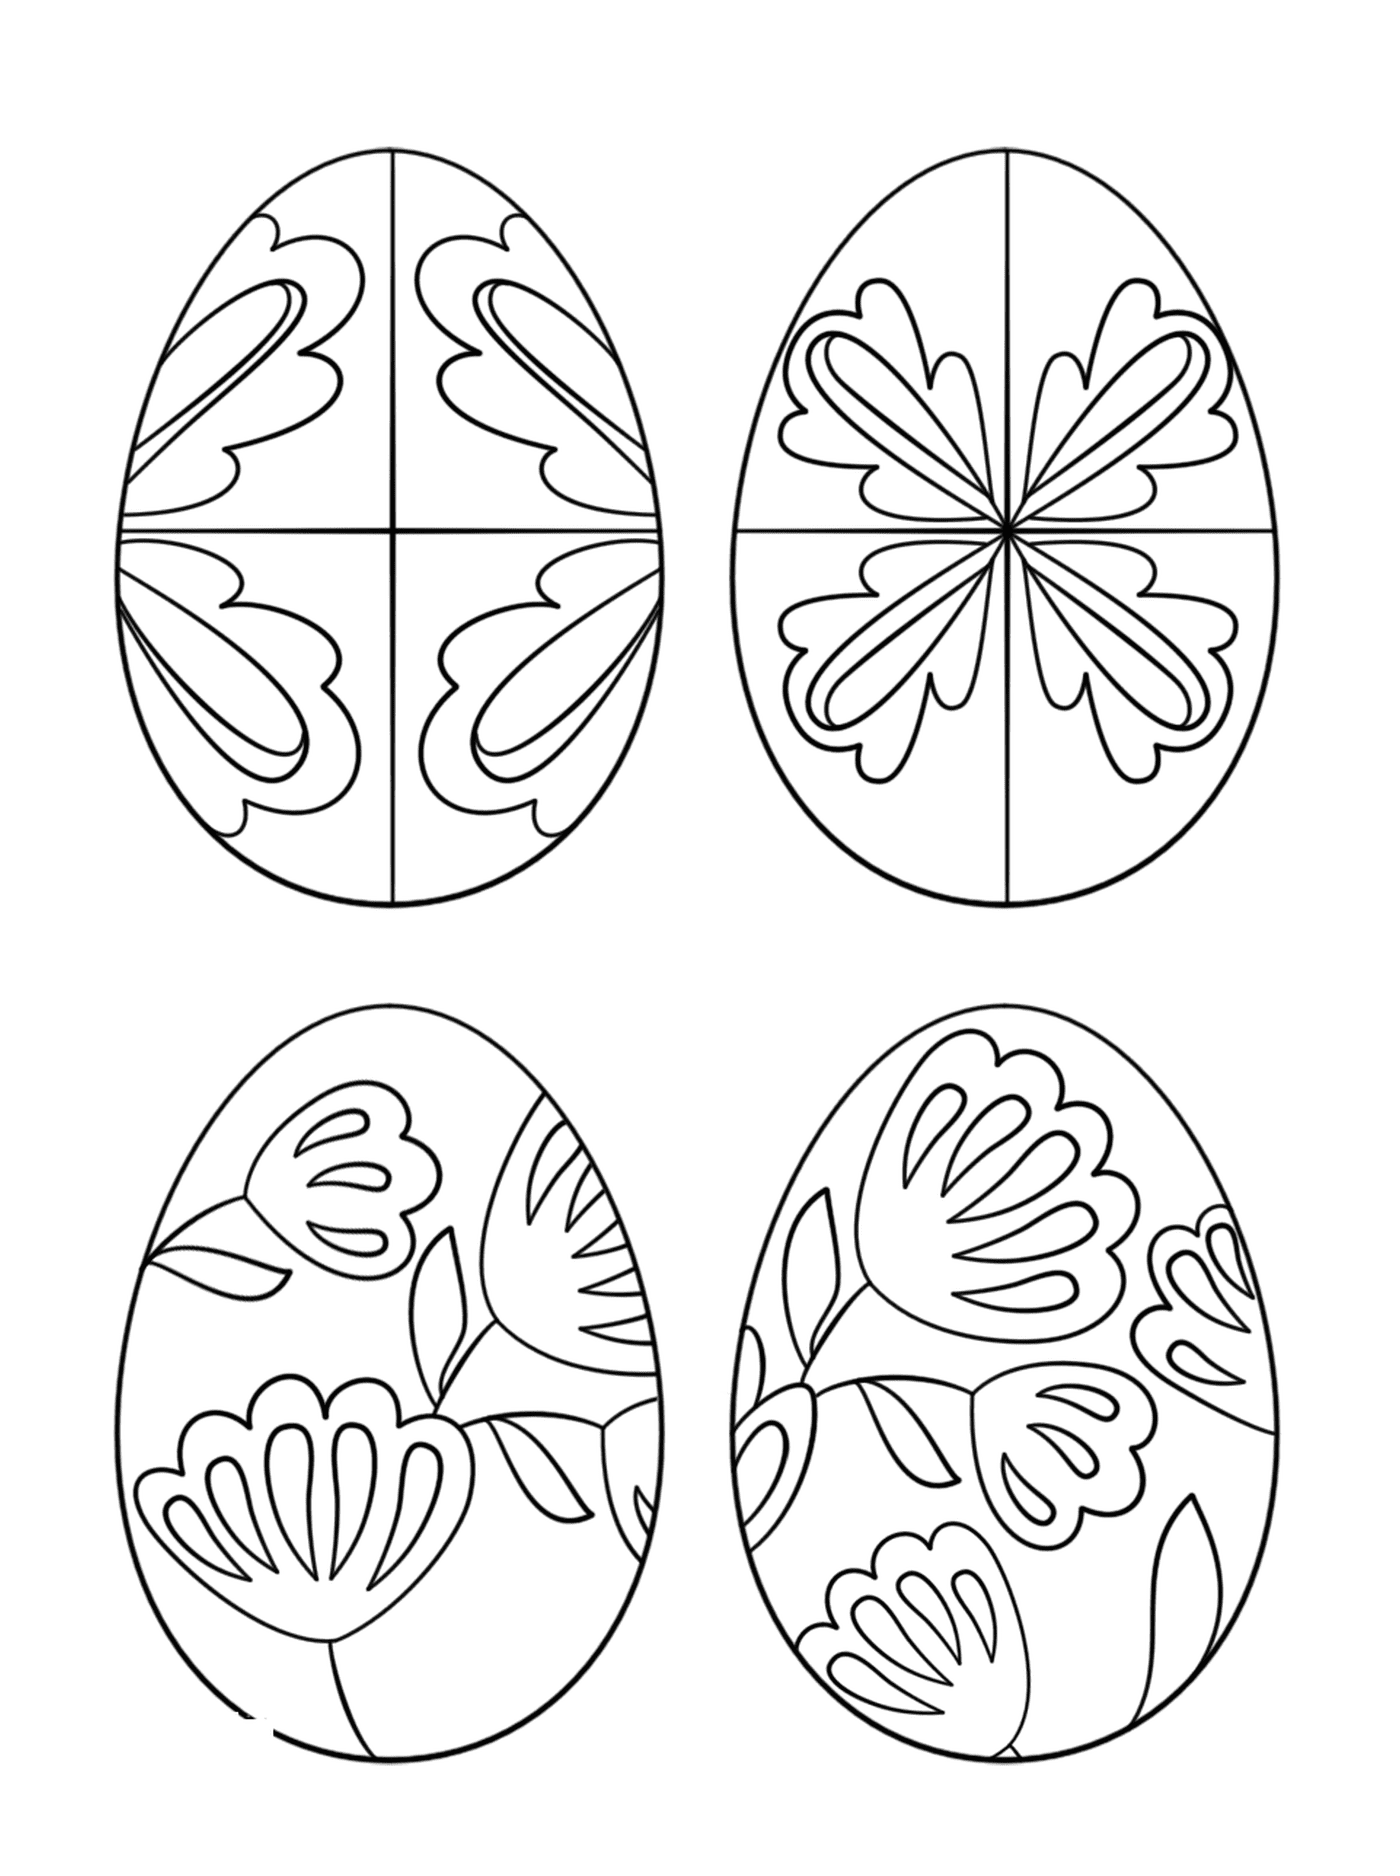  Huevos pysanky, un juego de huevos de Pascua decorados con diferentes patrones 